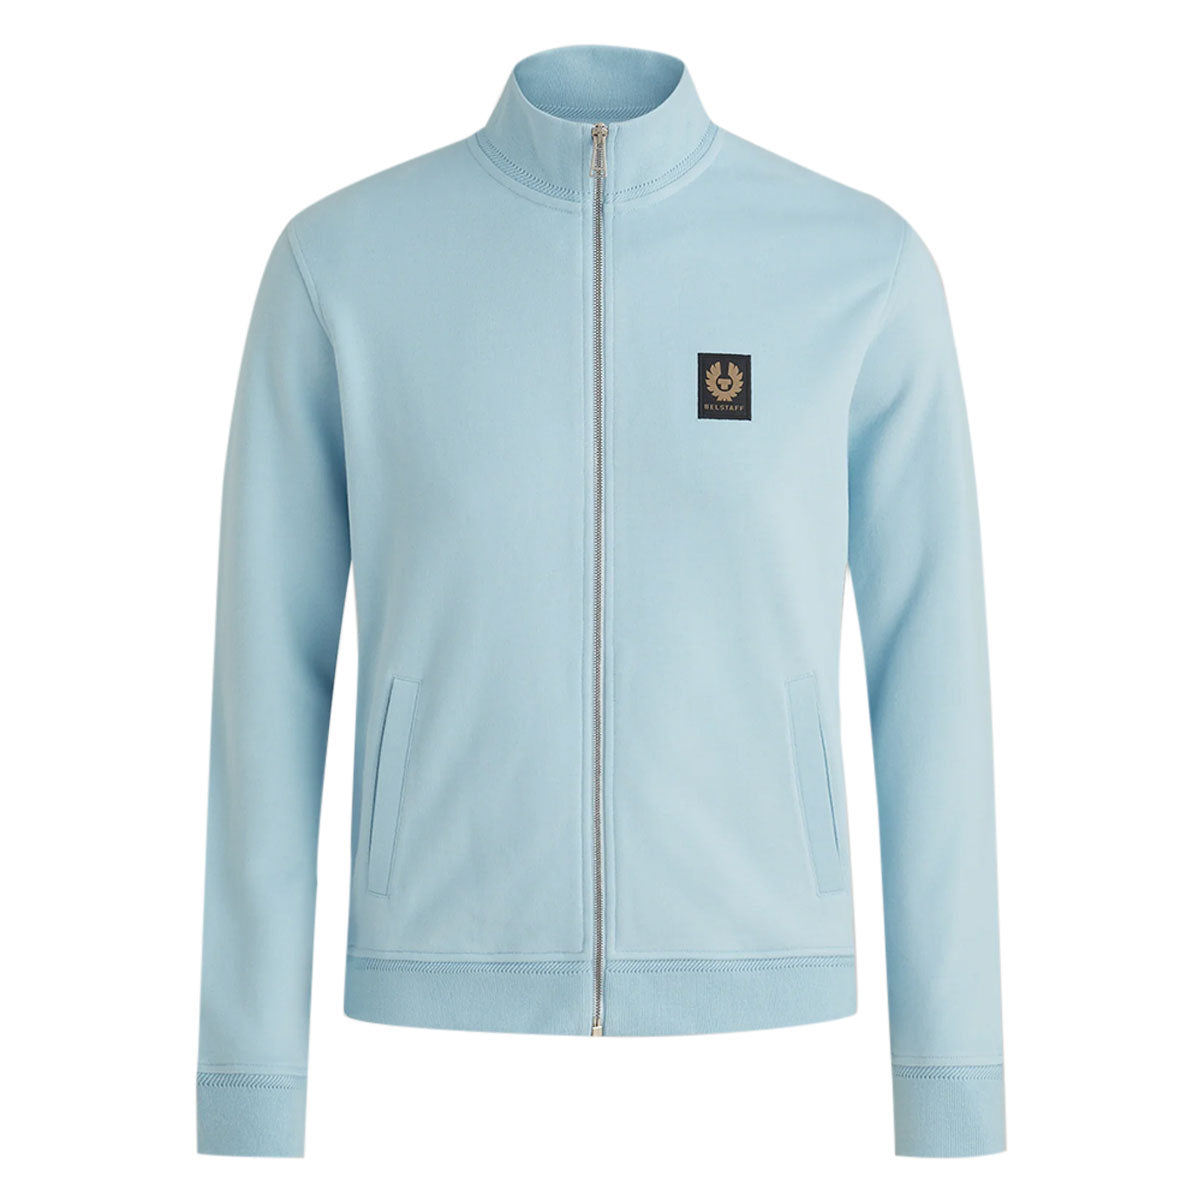 Skyline Blue Cotton Fleece Zip Sweater Cardigan Santoni Casual   